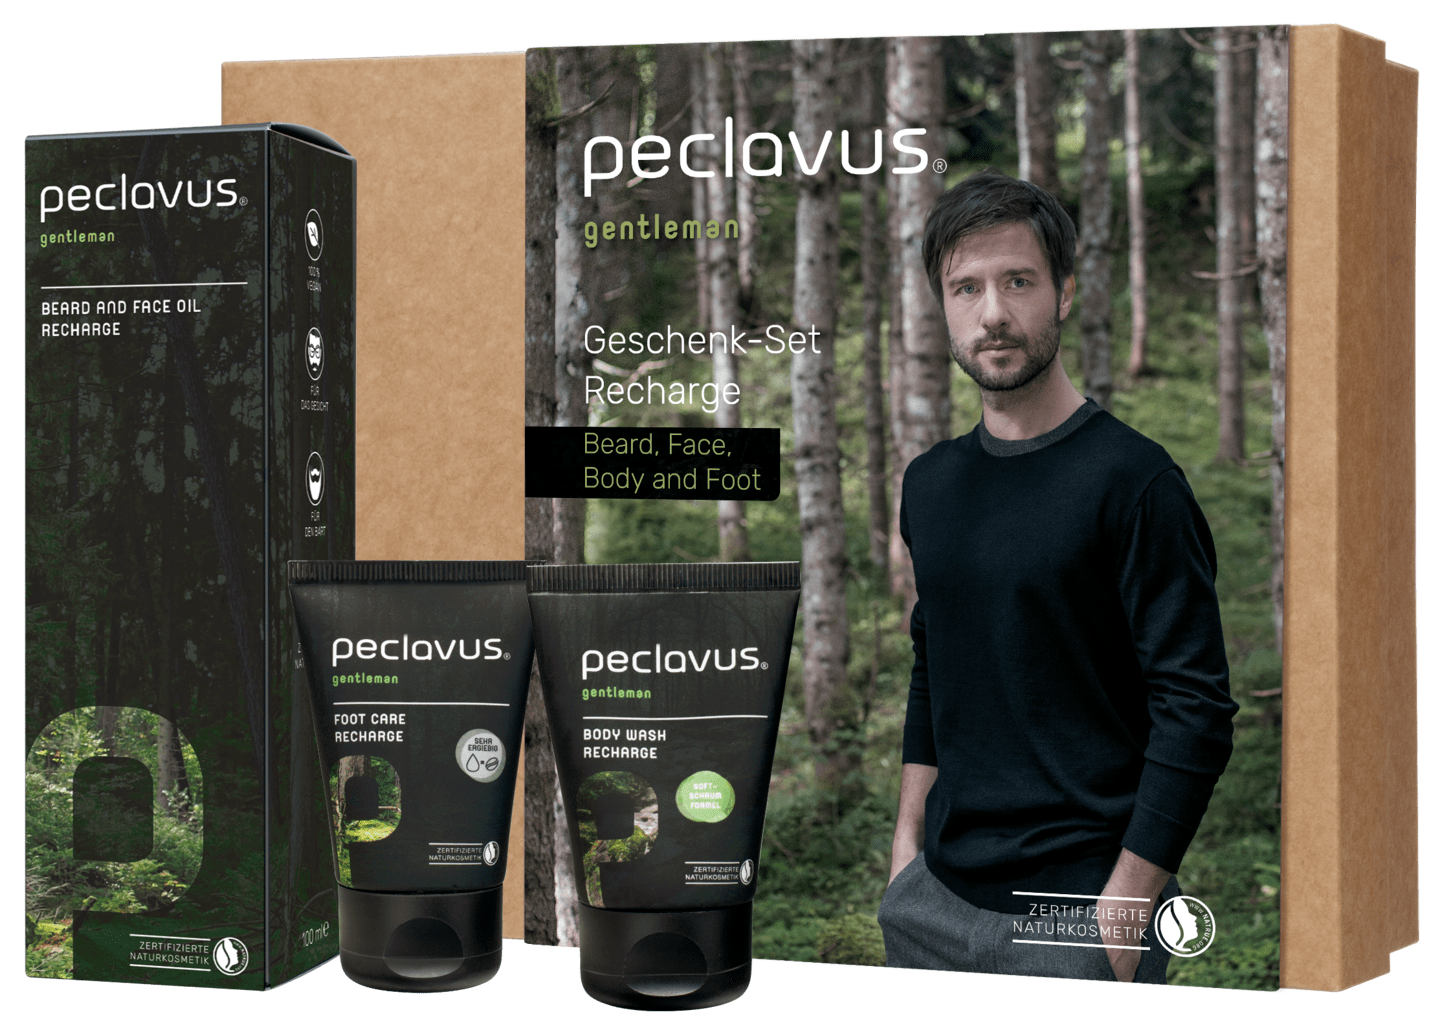 peclavus - Geschenk-Set Recharge Beard, Face, Body and Foot